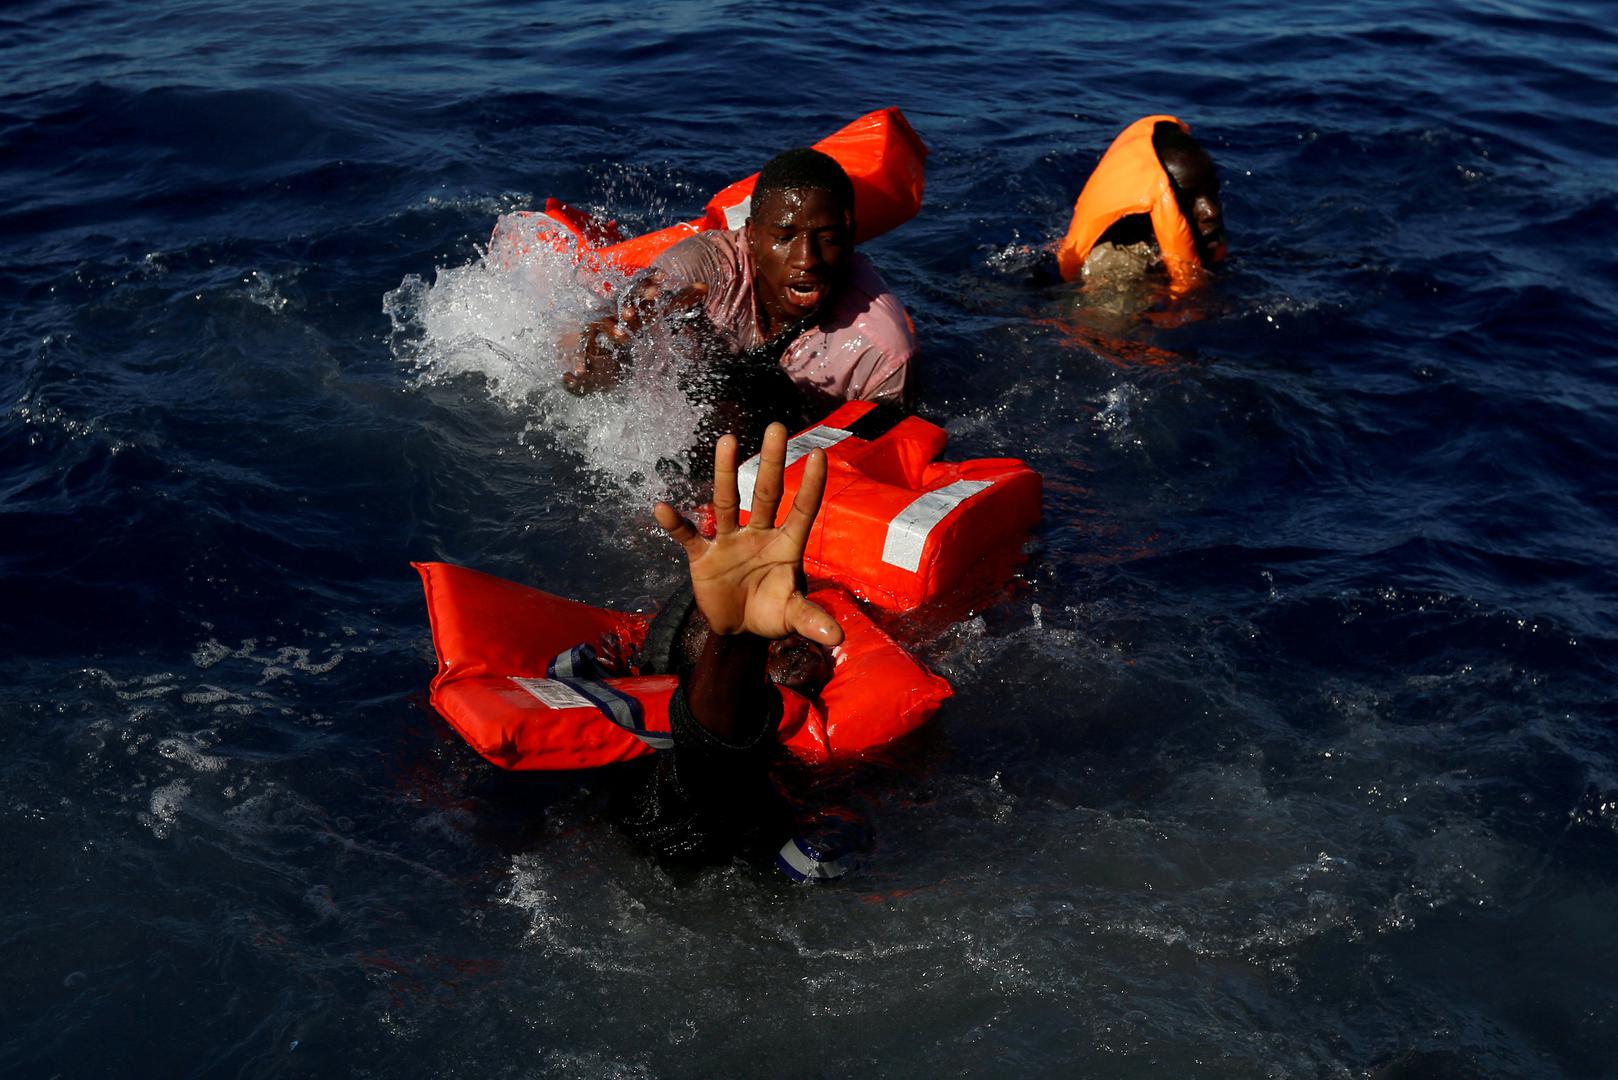 Migranti tijekom operacije spašavanja u međunarodnim vodama, 15 nautičkih milja od obale libijskog grada Zawiya.